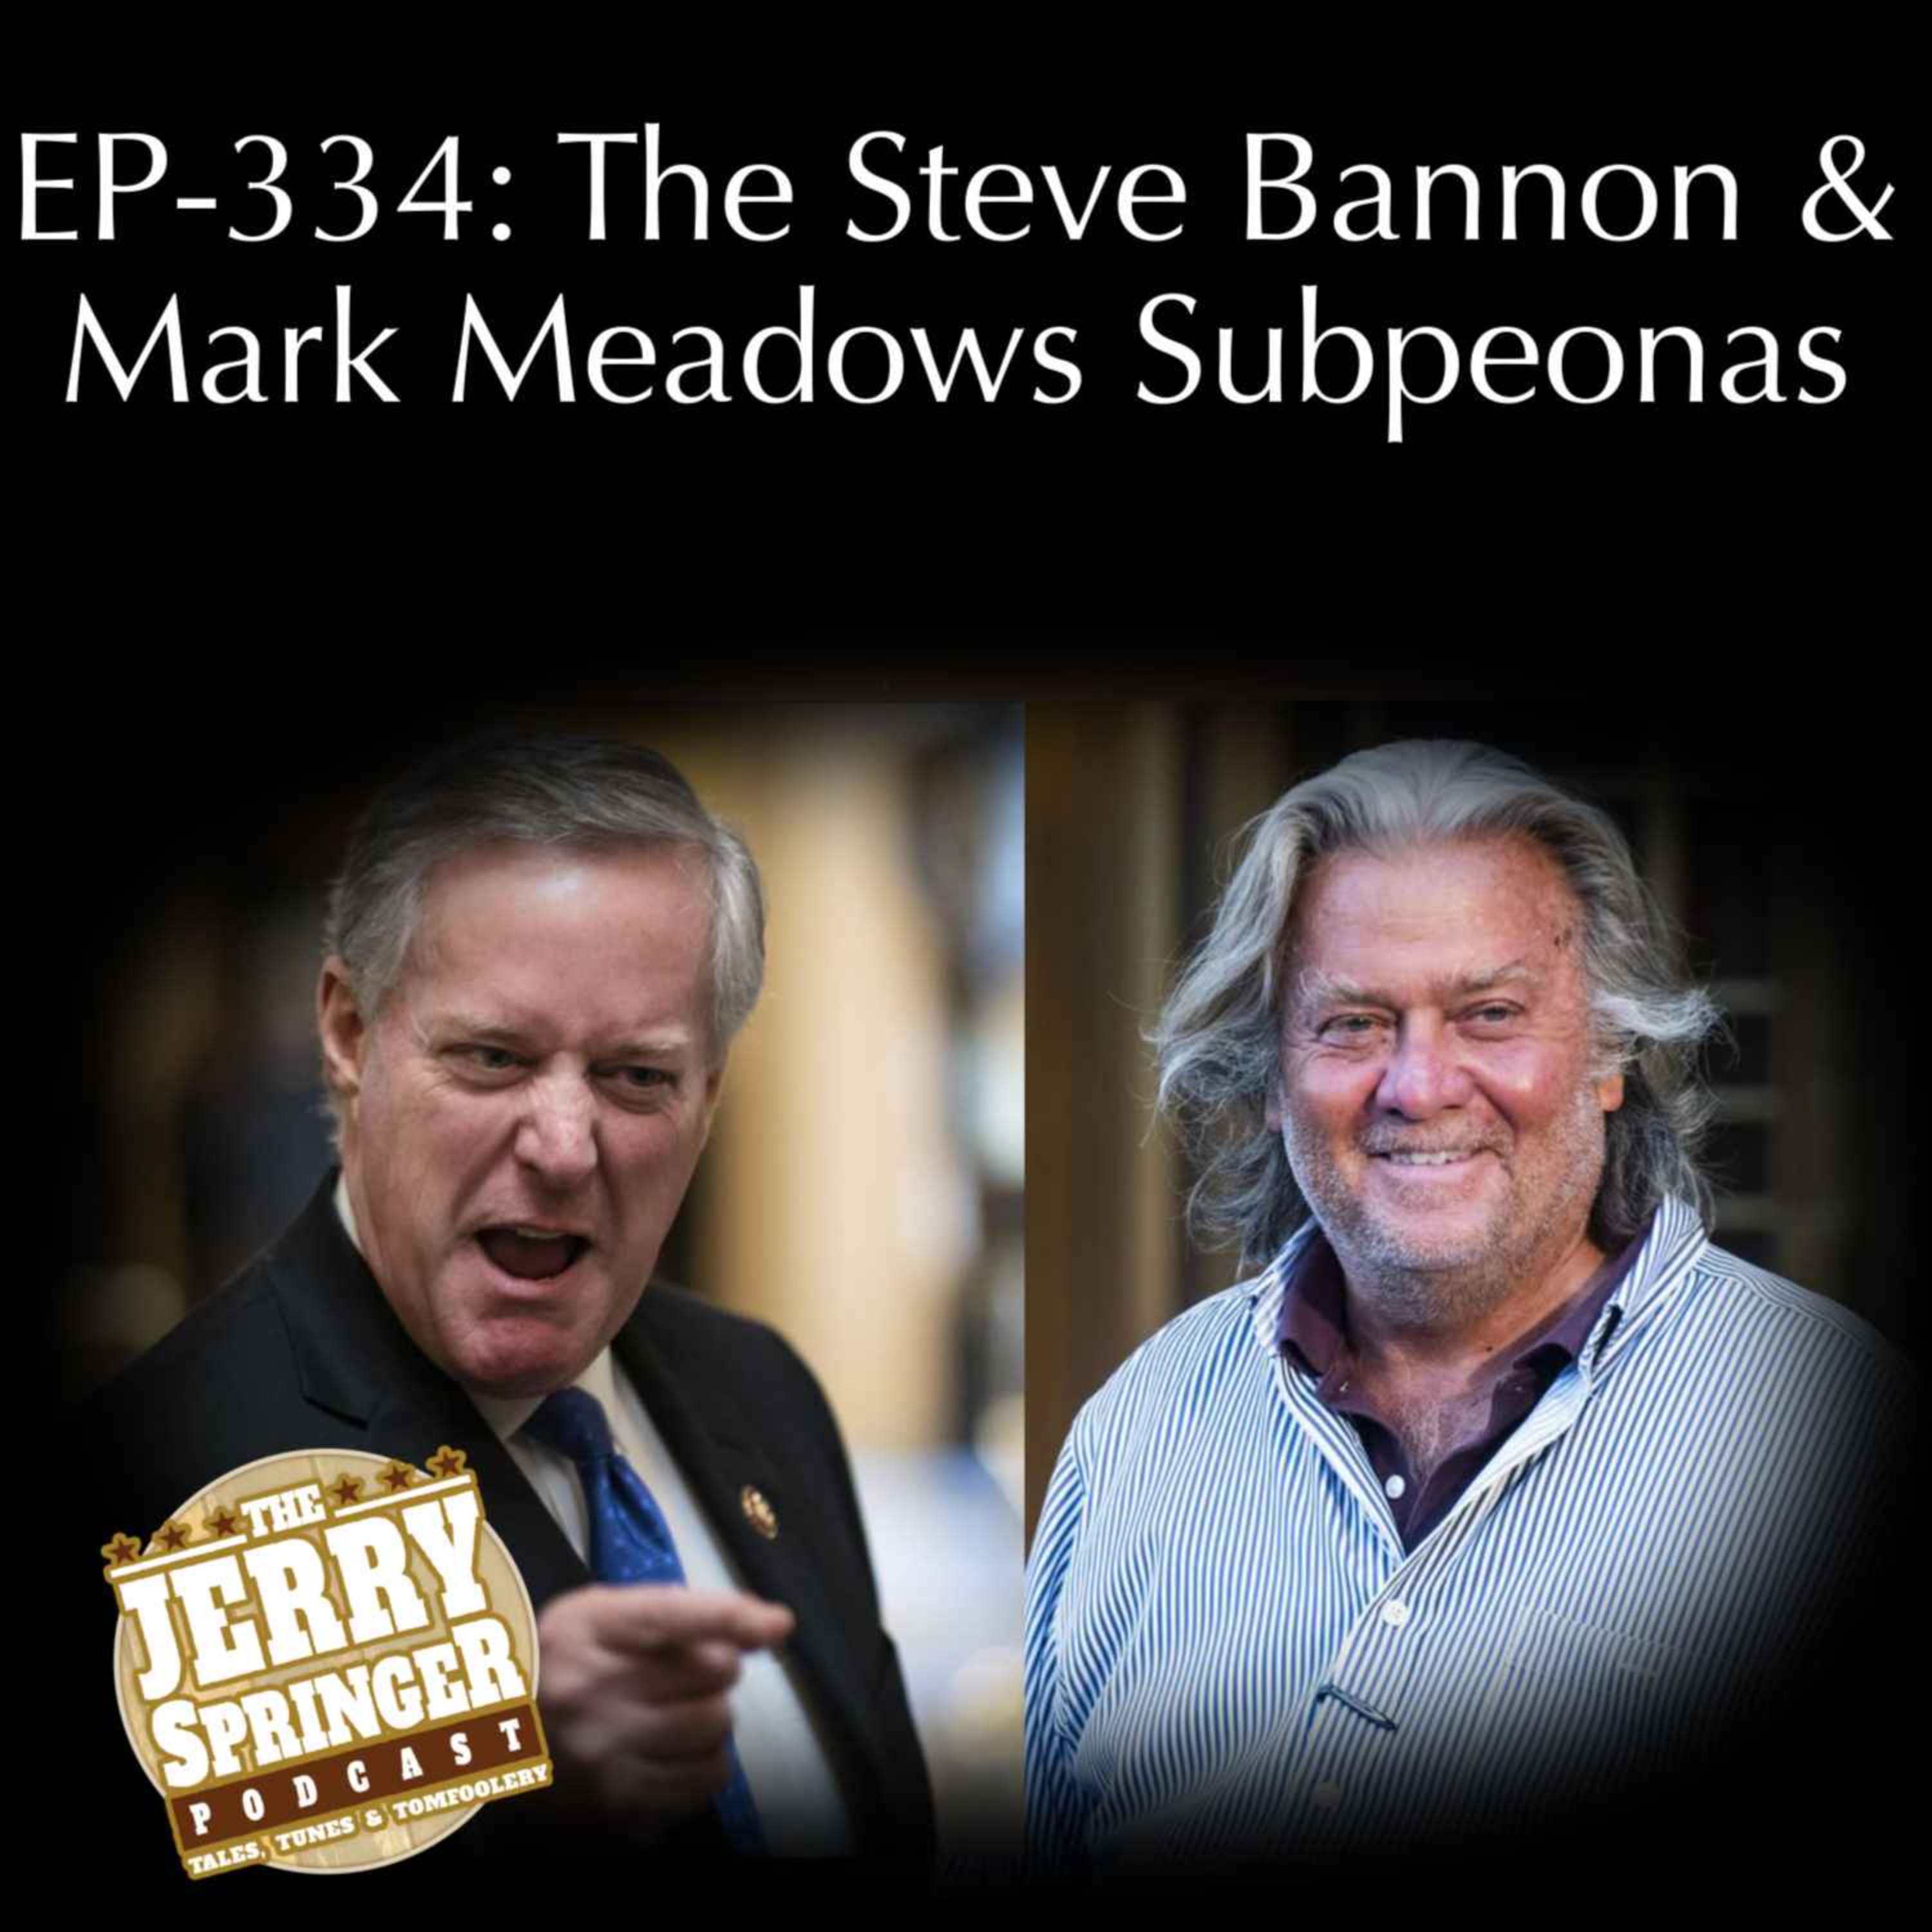 Steve Bannon and Mark Meadows Subpeonas:  EP - 334